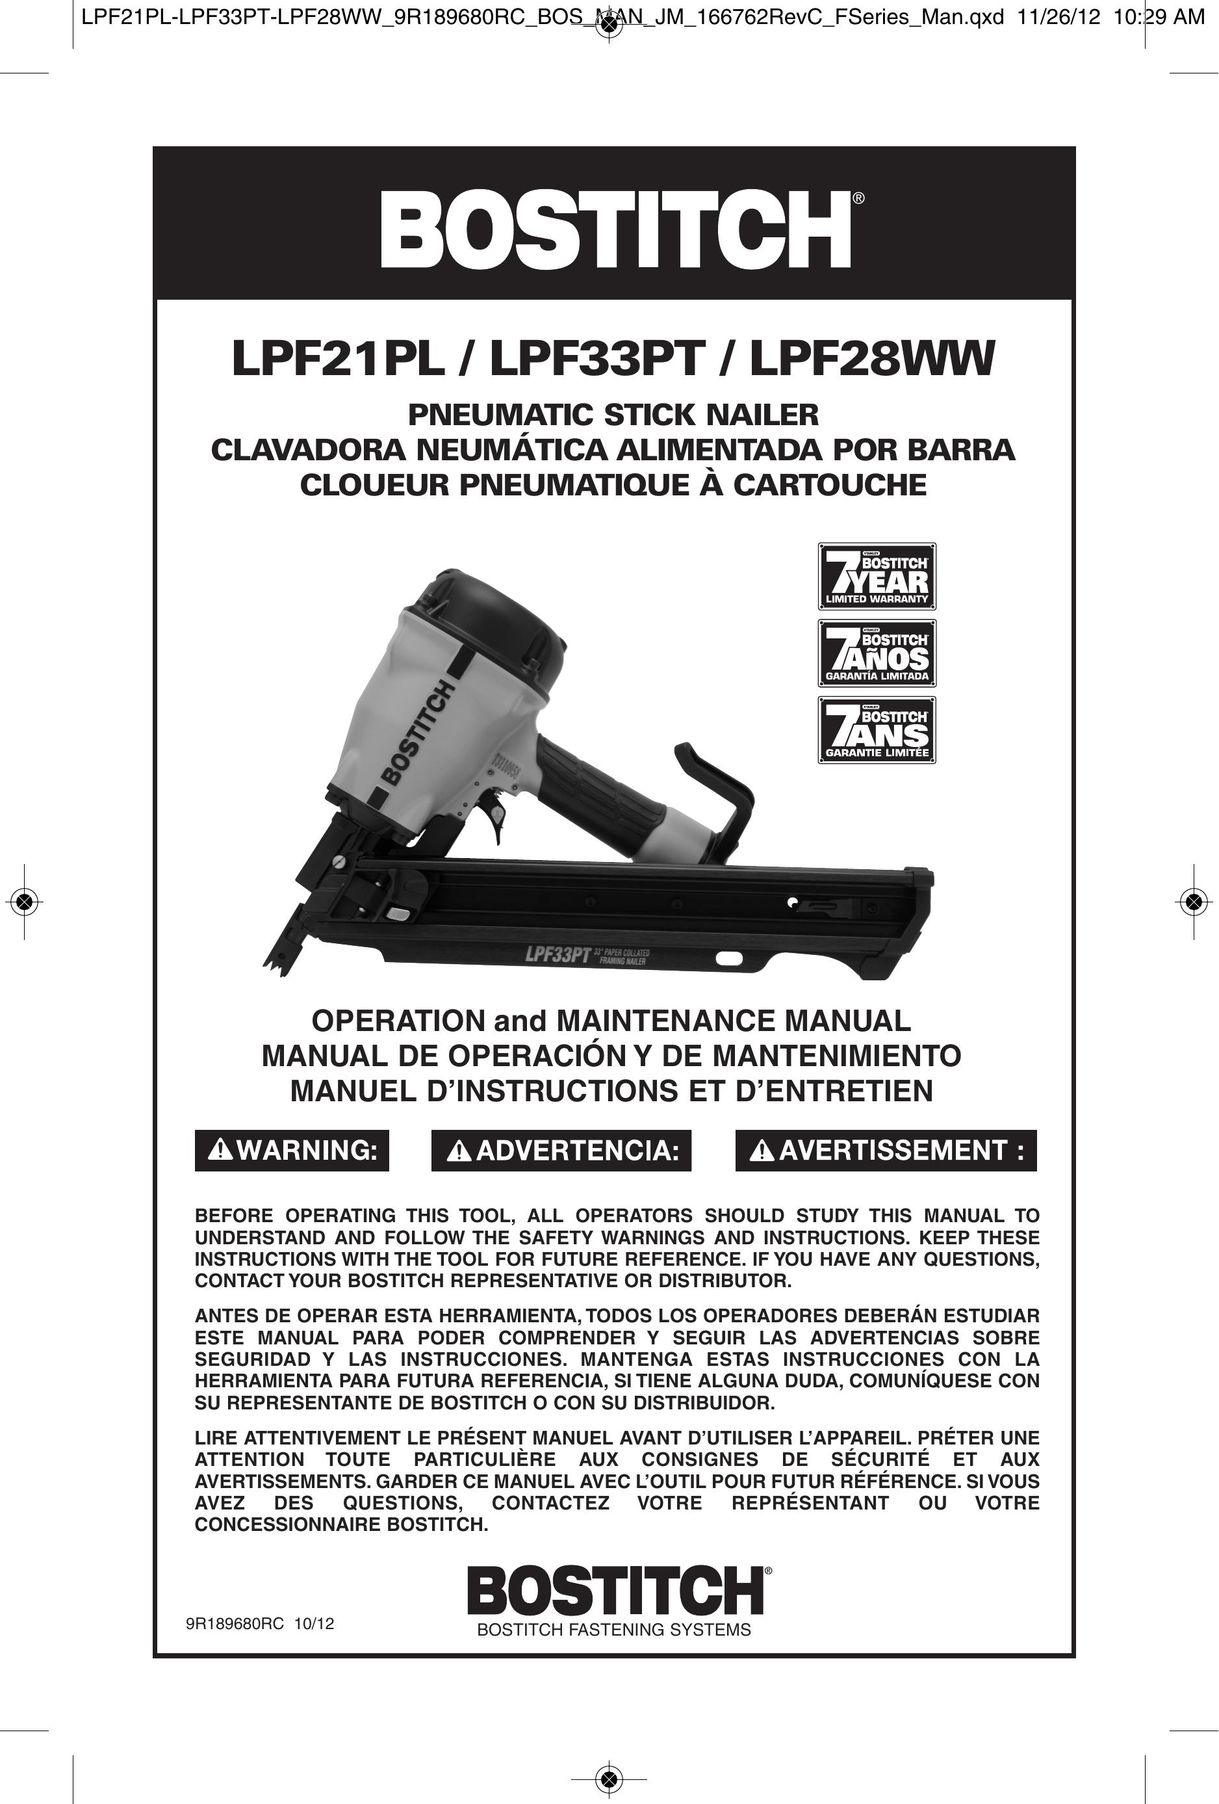 Bostitch LPF28WW Nail Gun User Manual